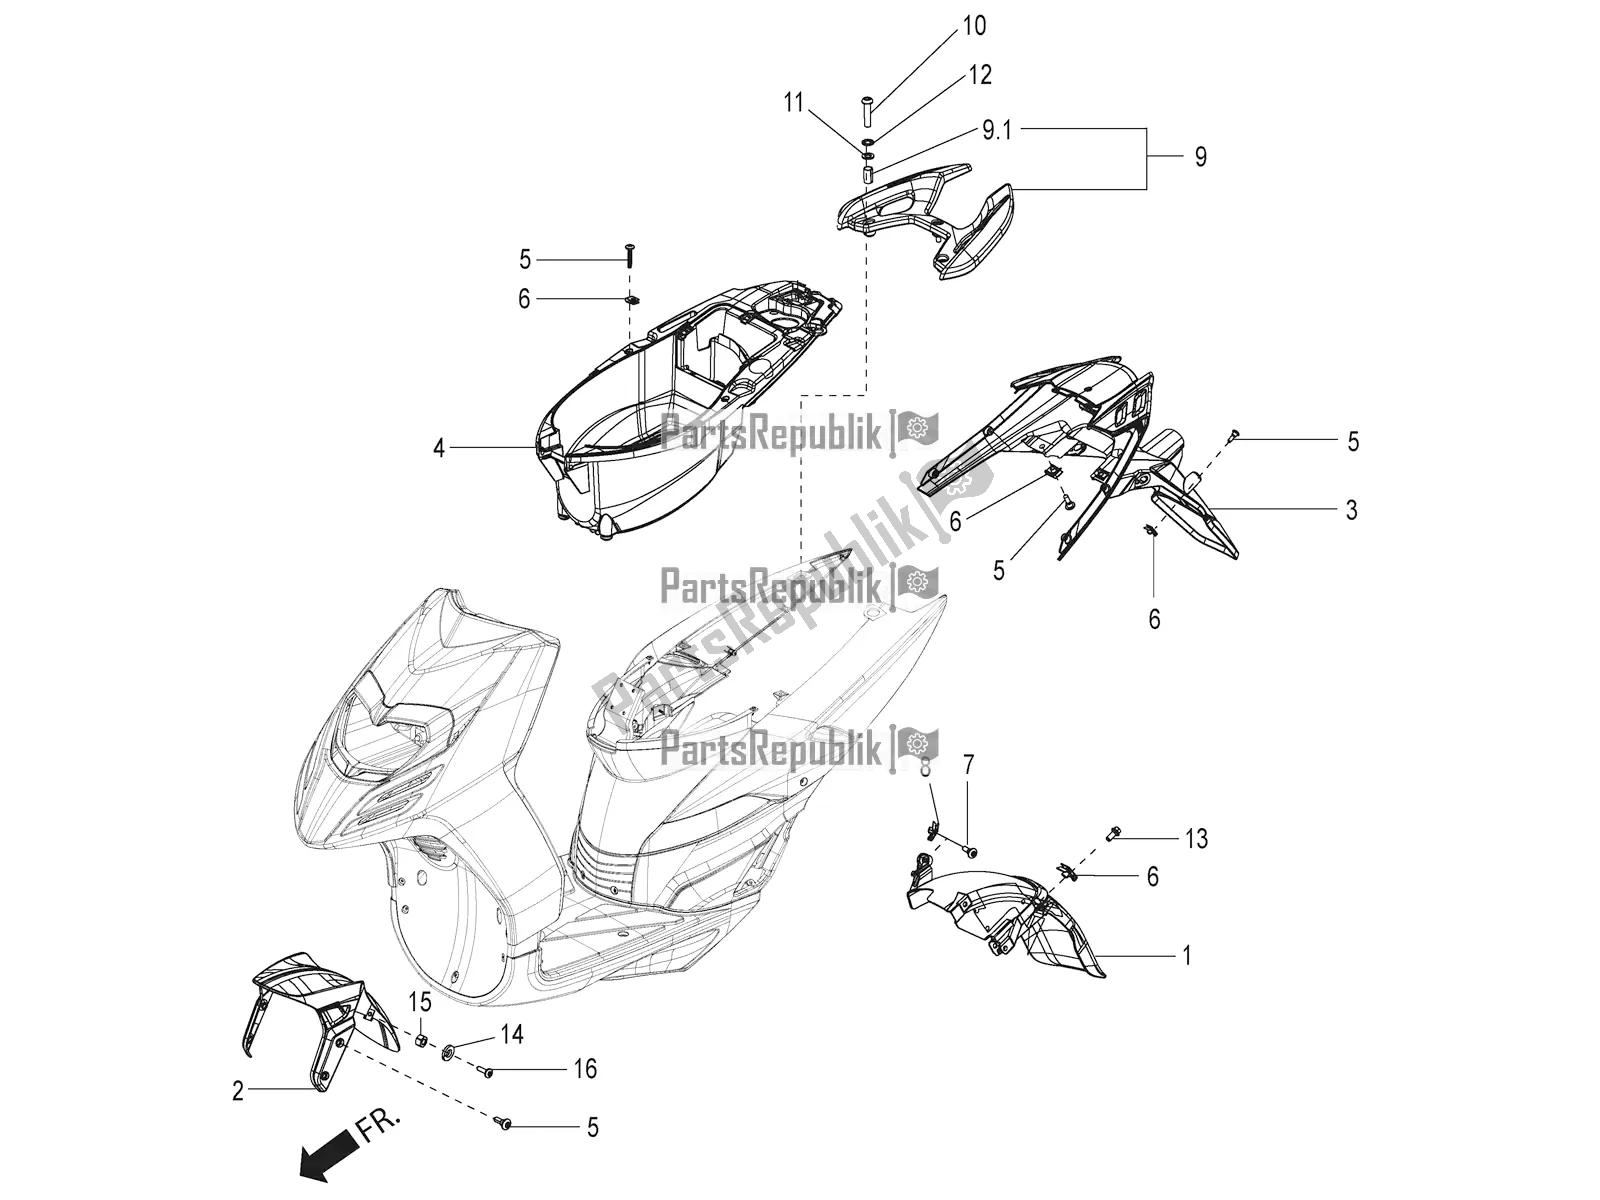 All parts for the Mudguard And Helmet Case of the Aprilia SR 125 Storm TT Bsiv 2020